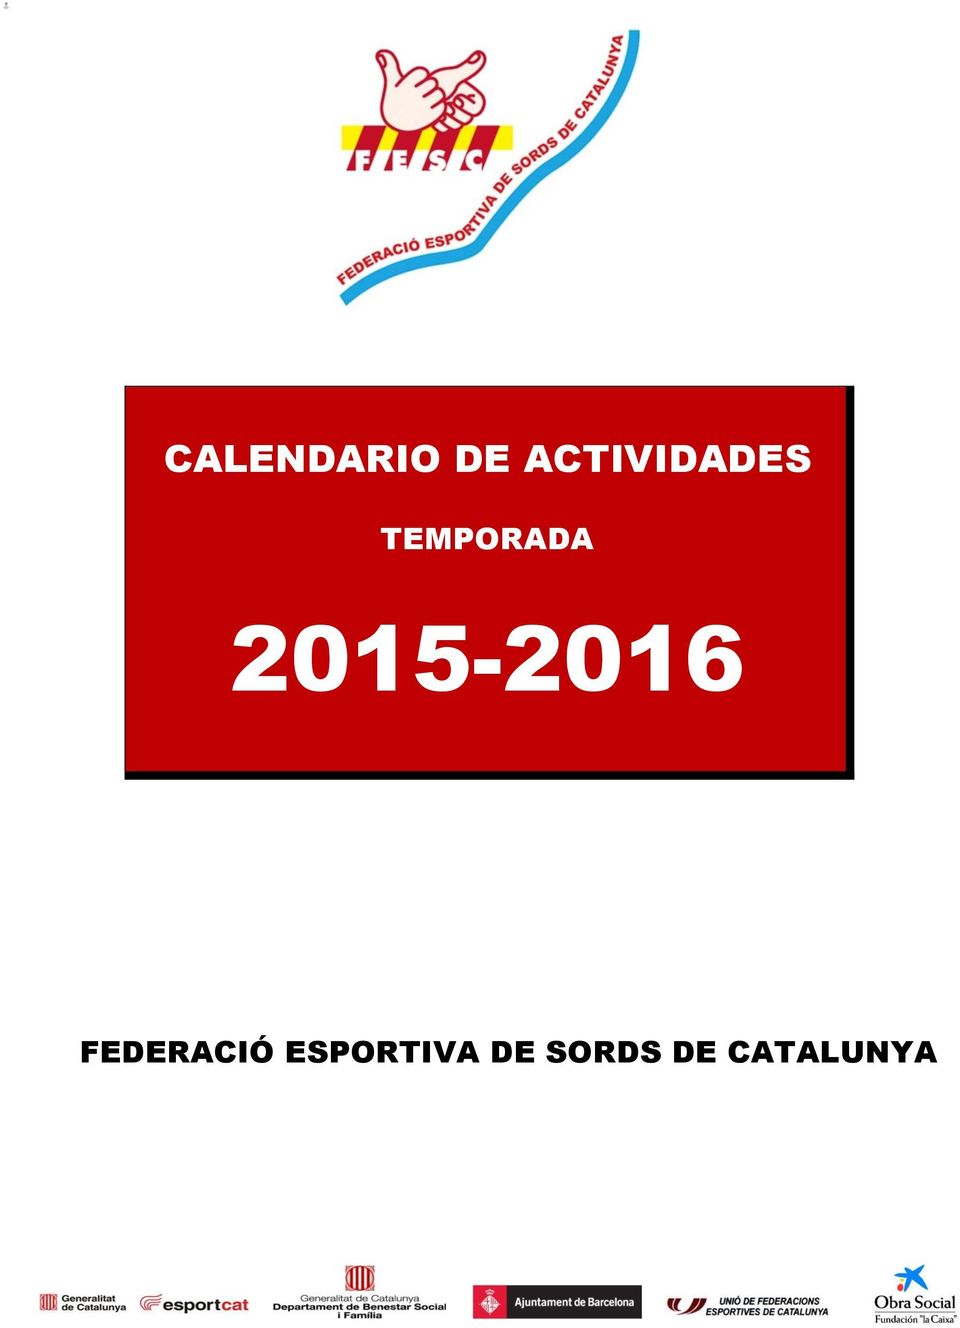 2015-2016 FEDERACIÓ